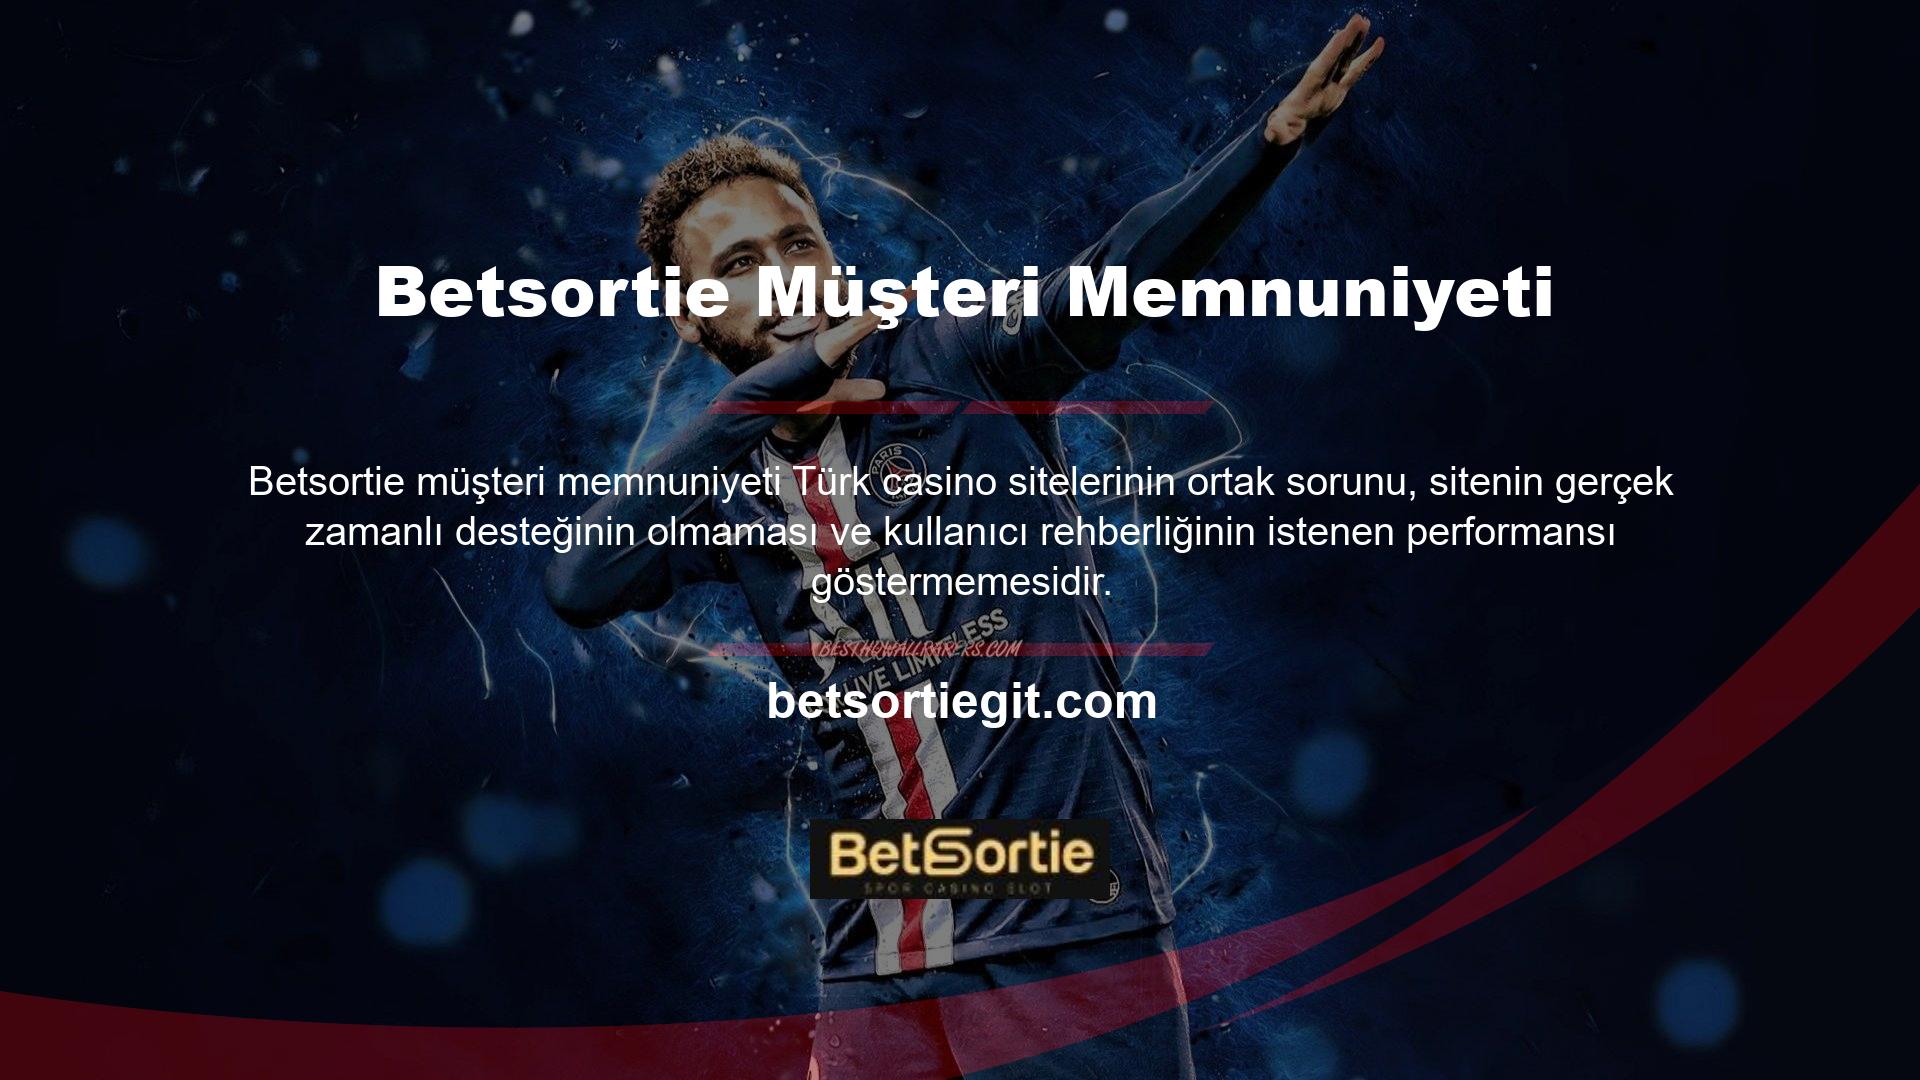 Betsortie, müşteri hizmetleri ekibiyle bu sorunu başarıyla çözdü